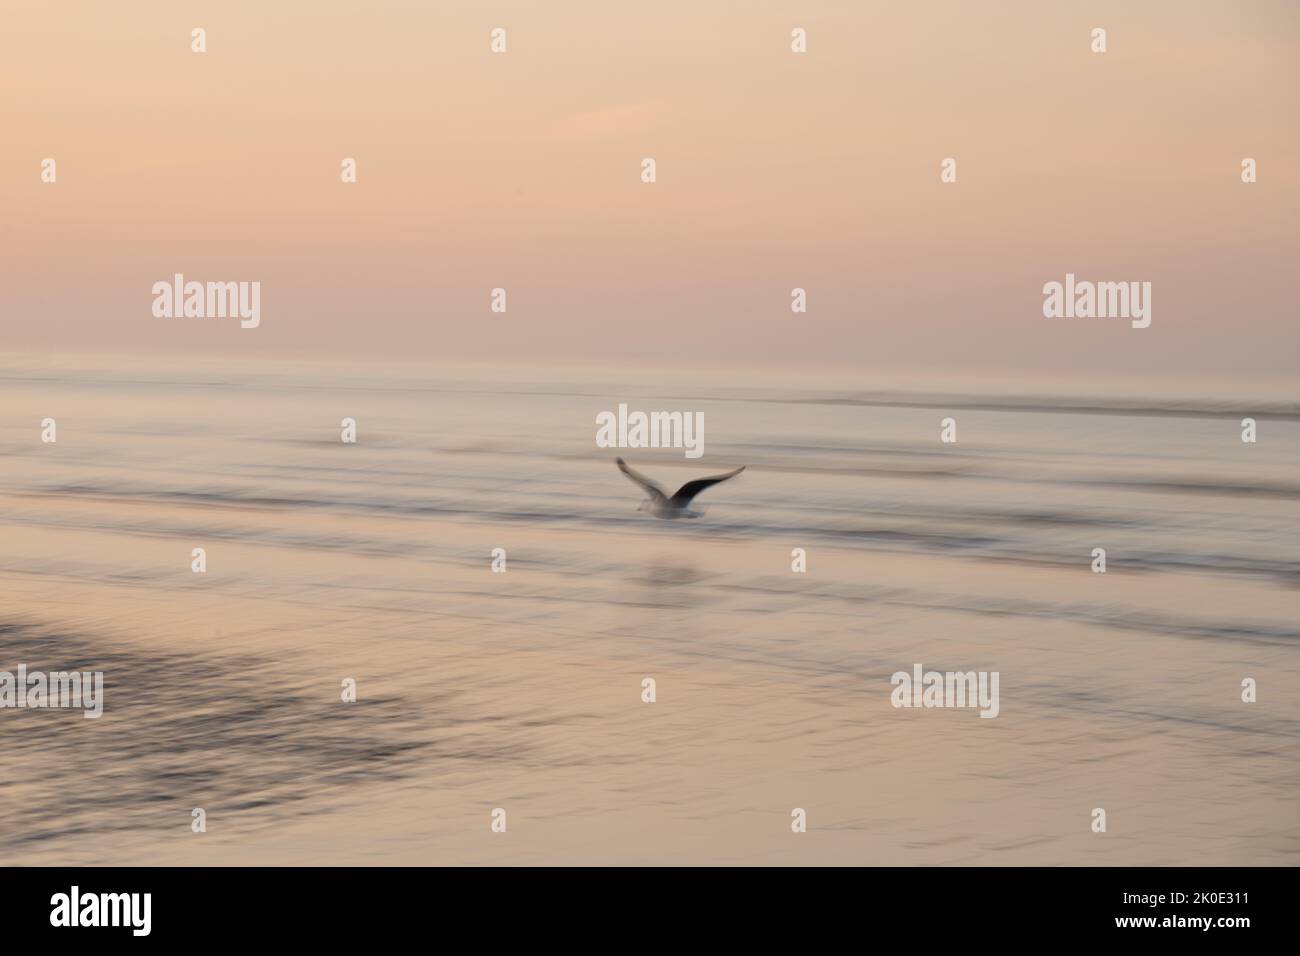 Image de mouvement intentionnel de la caméra ICM d'un oiseau volant au-dessus de l'océan au lever du soleil à Sussex, en Angleterre Banque D'Images